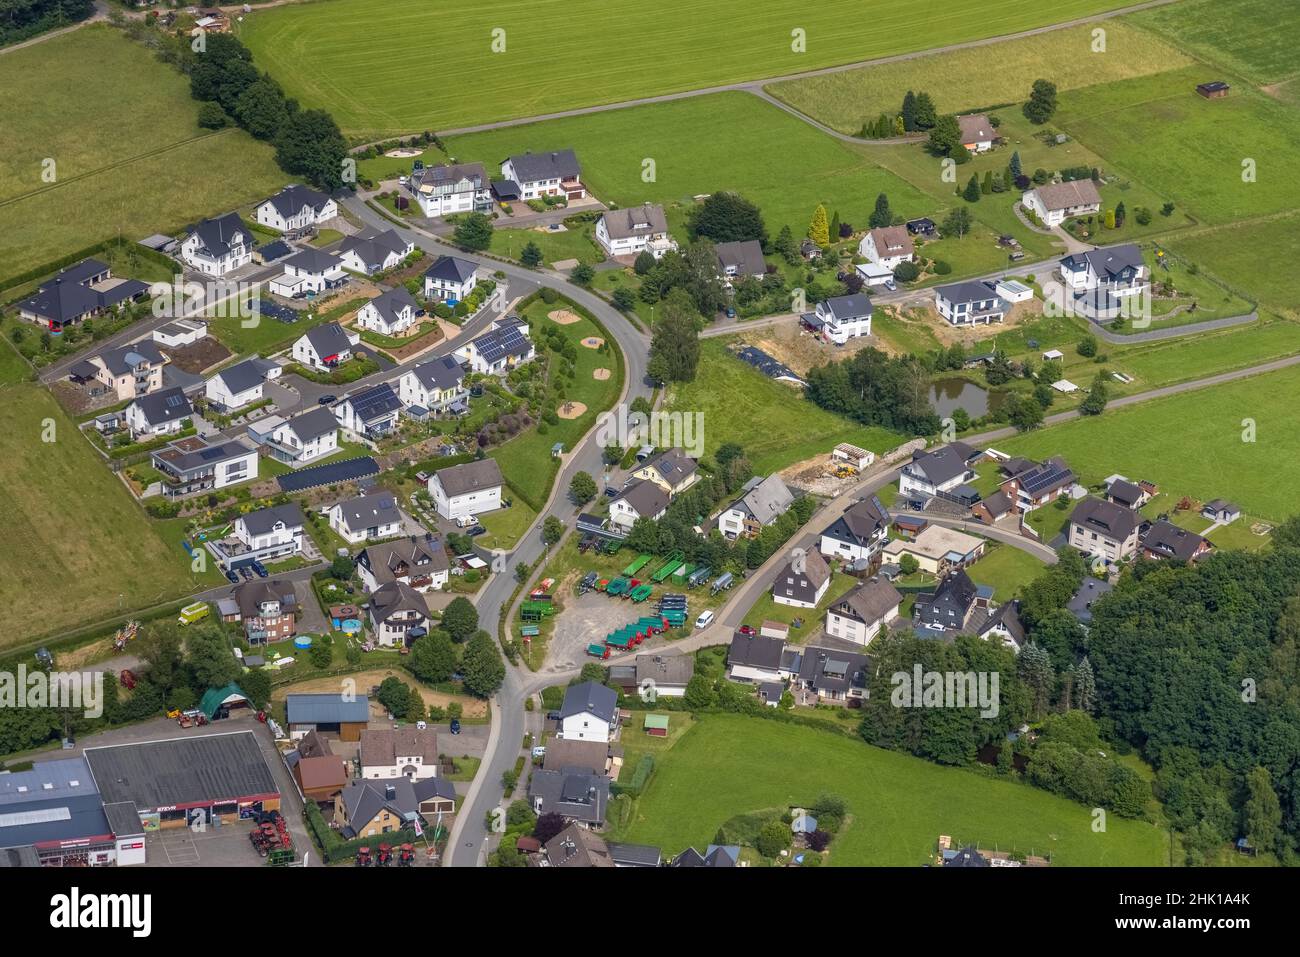 Luftaufnahme, Siedlung zum Stollen in Altenhof, Baustelle Jahnstraße, Wenden, Sauerland, Nordrhein-Westfalen, Deutschland, Bau wo Stockfoto